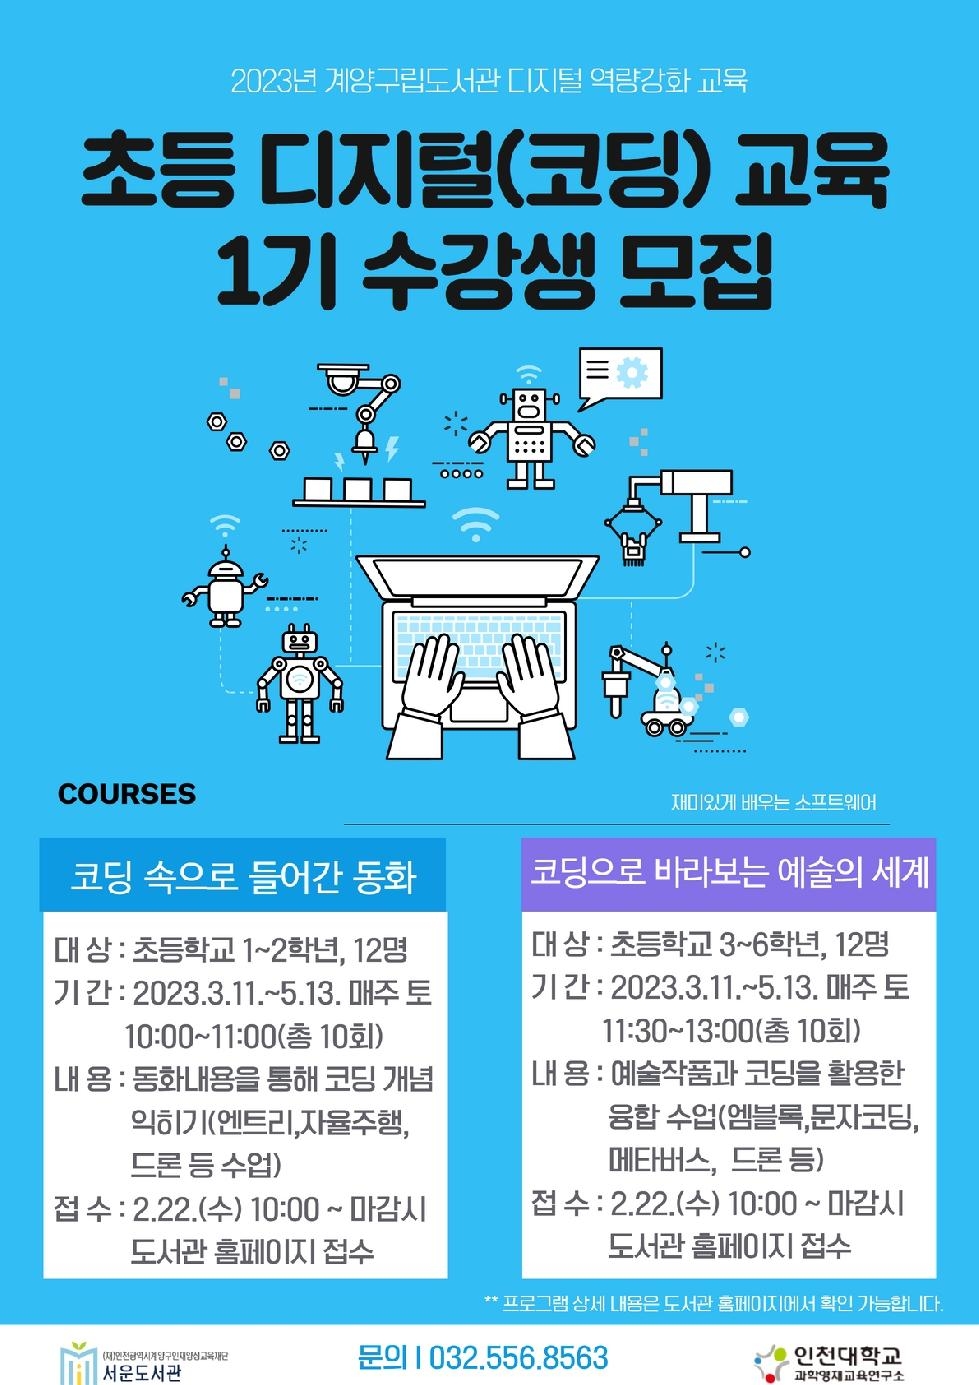 인천 계양구 서운도서관, 디지털 역량 강화 교육 프로그램 운영